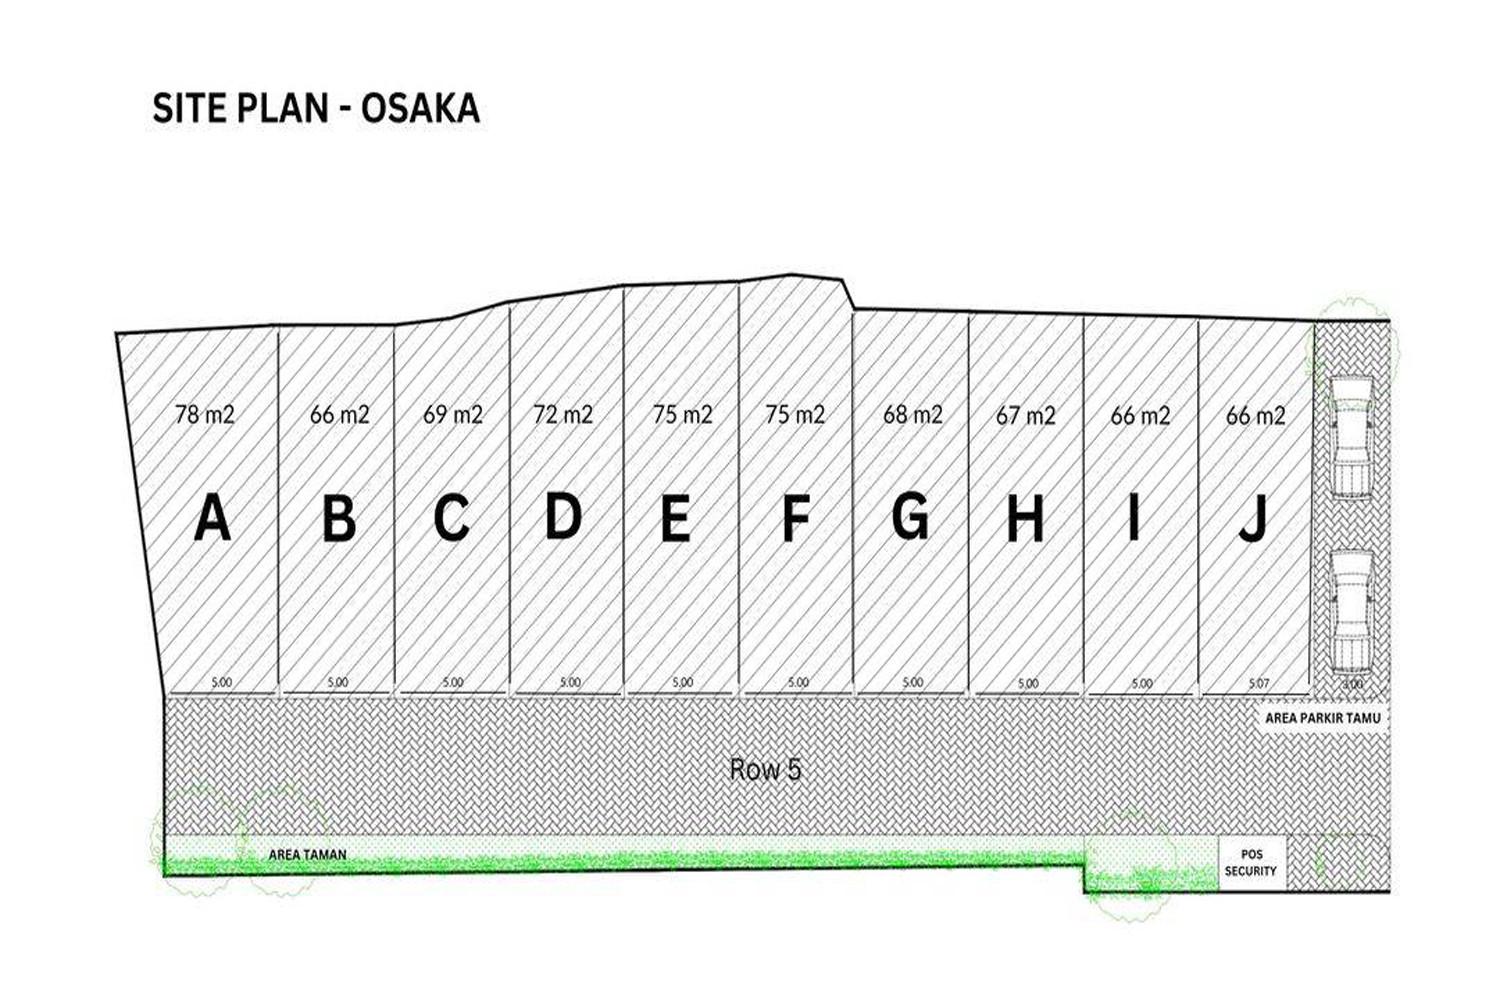 Siteplan Osaka Tanjung Barat